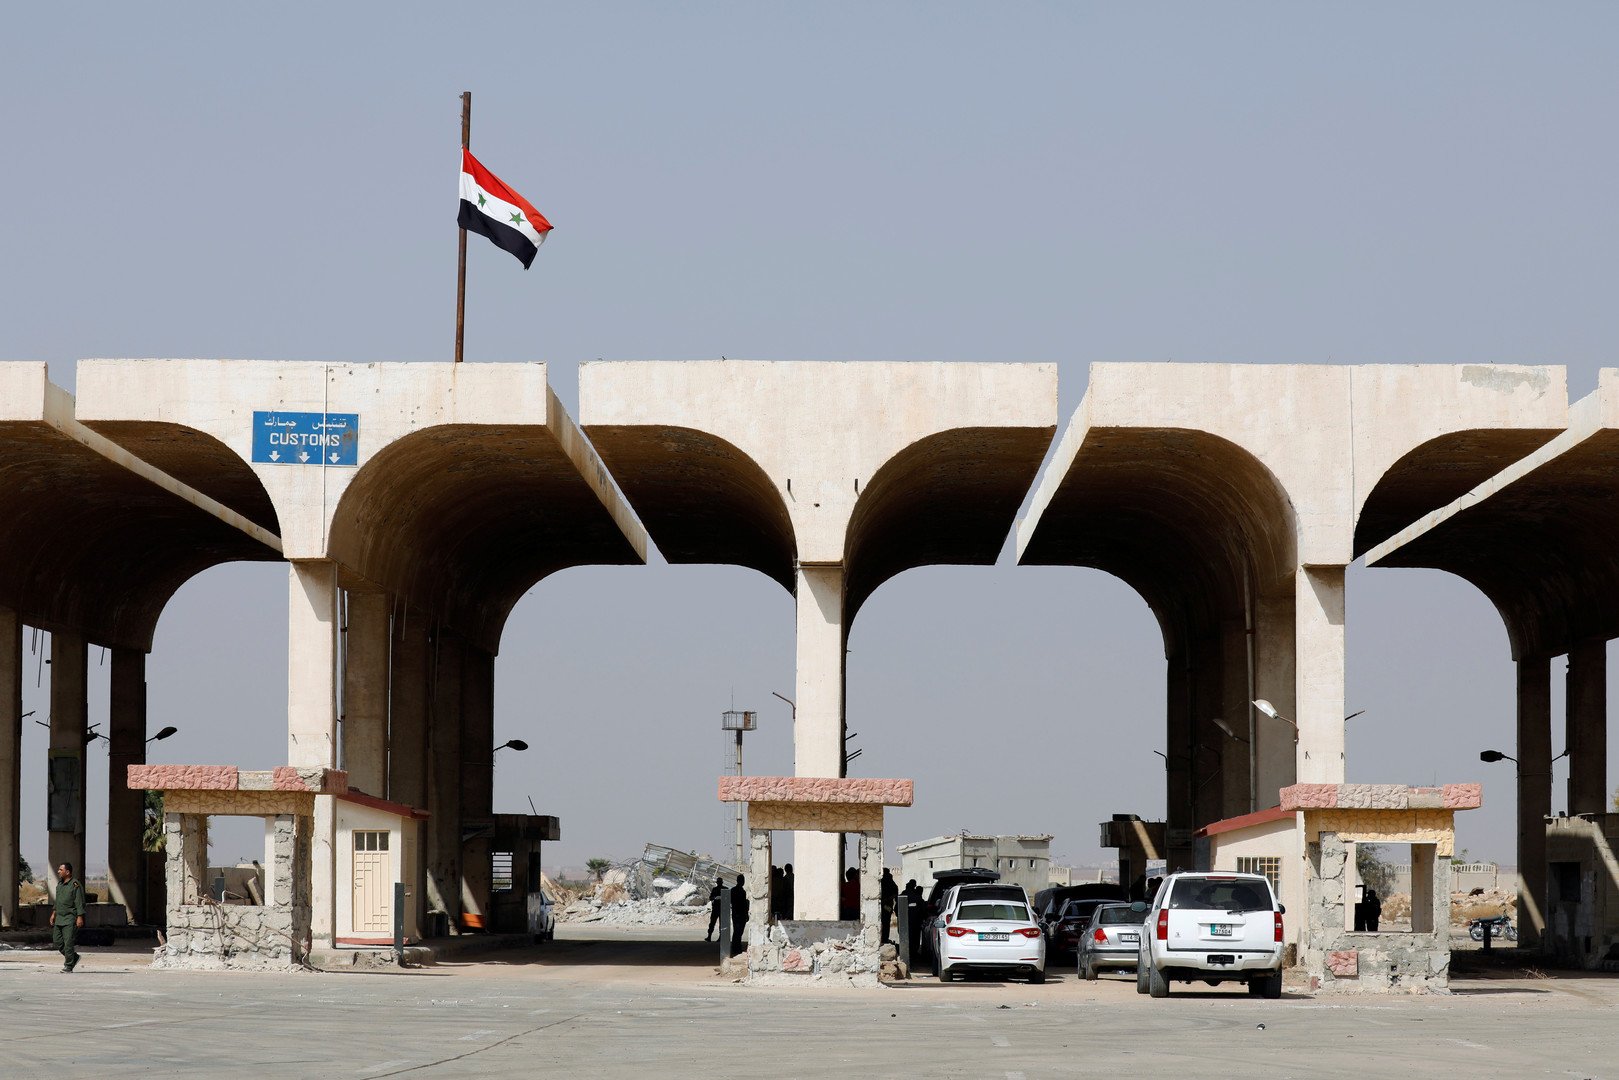 مسؤول أردني يشيد بإيجابيات إعادة فتح المنطقة الحرة السورية الأردنية